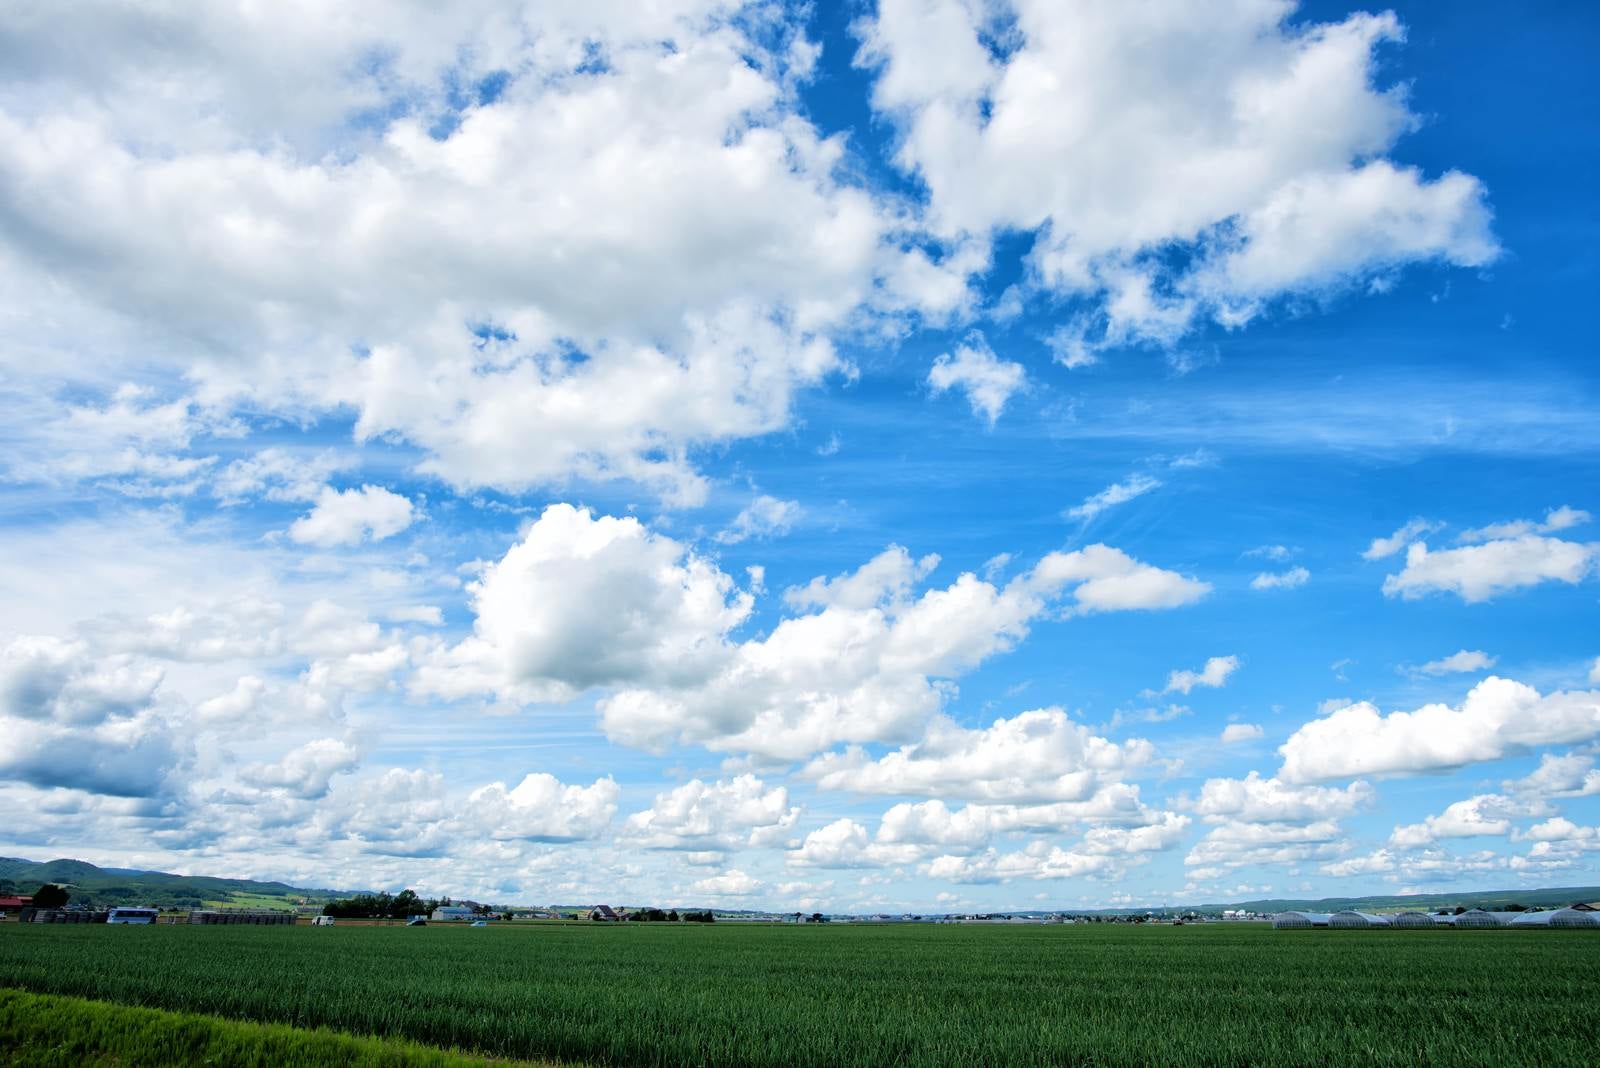 「北海道の広大な畑と空」の写真